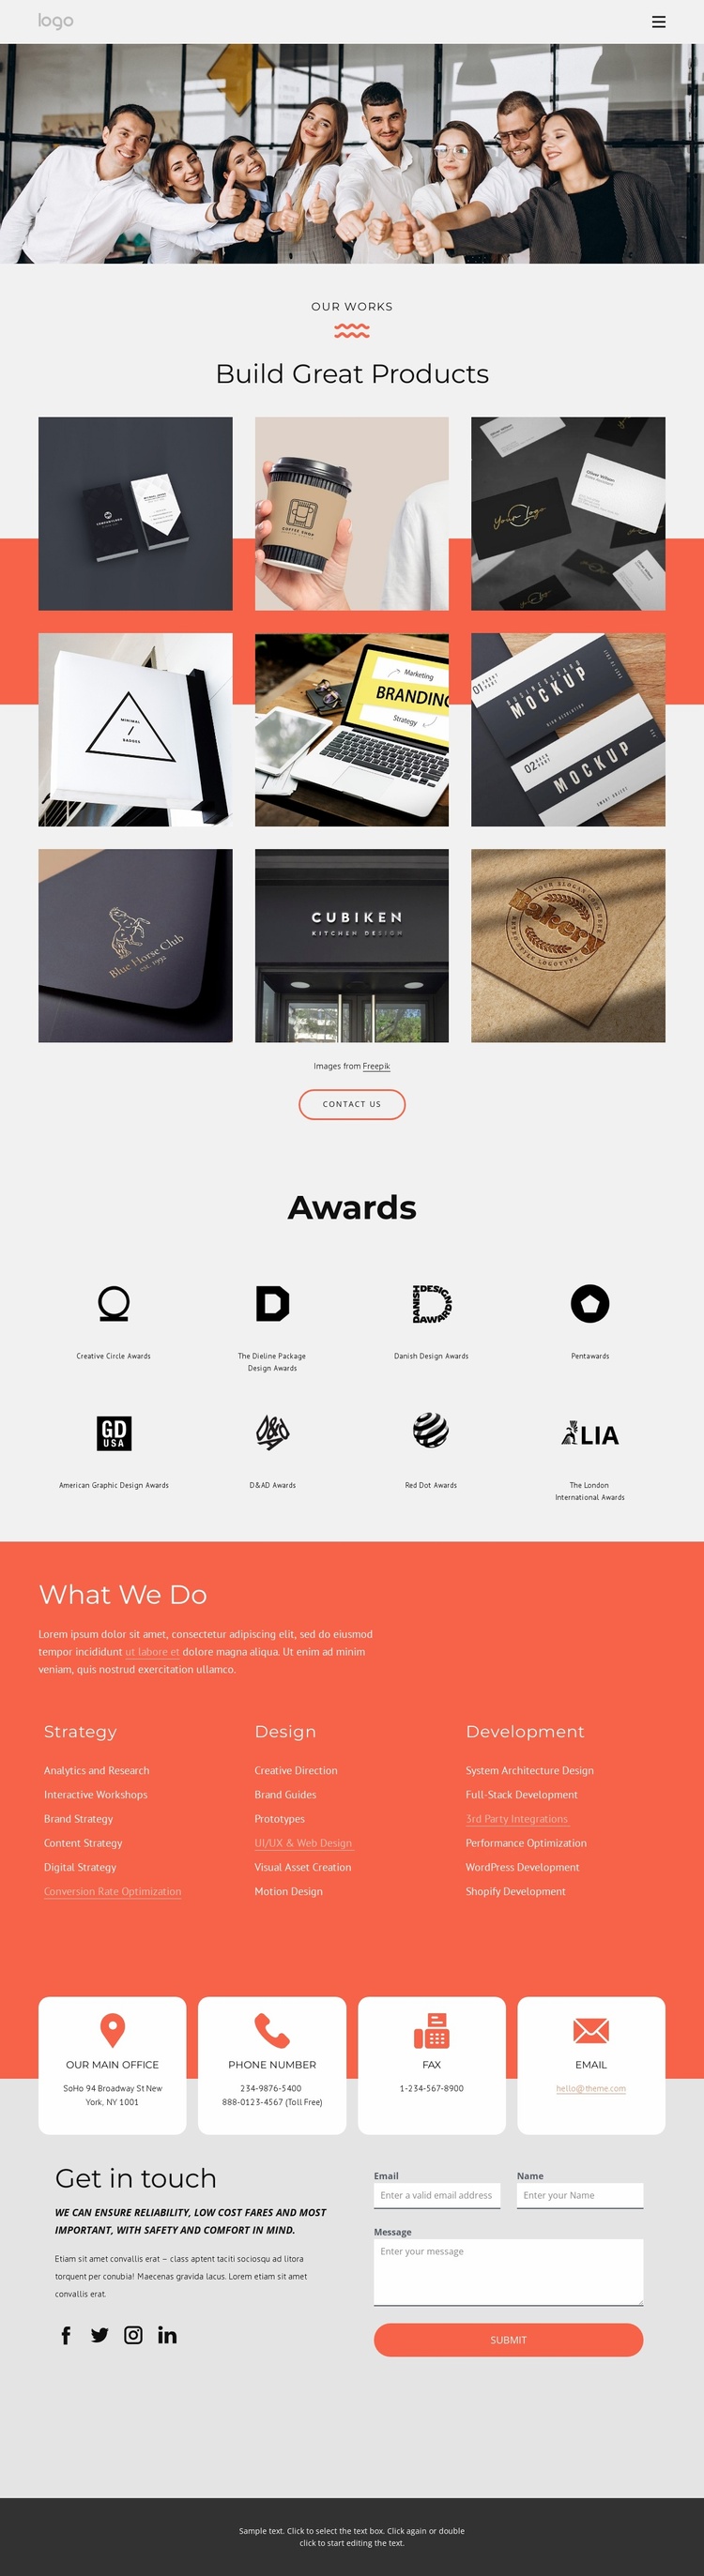 Award winning branding services Website Template